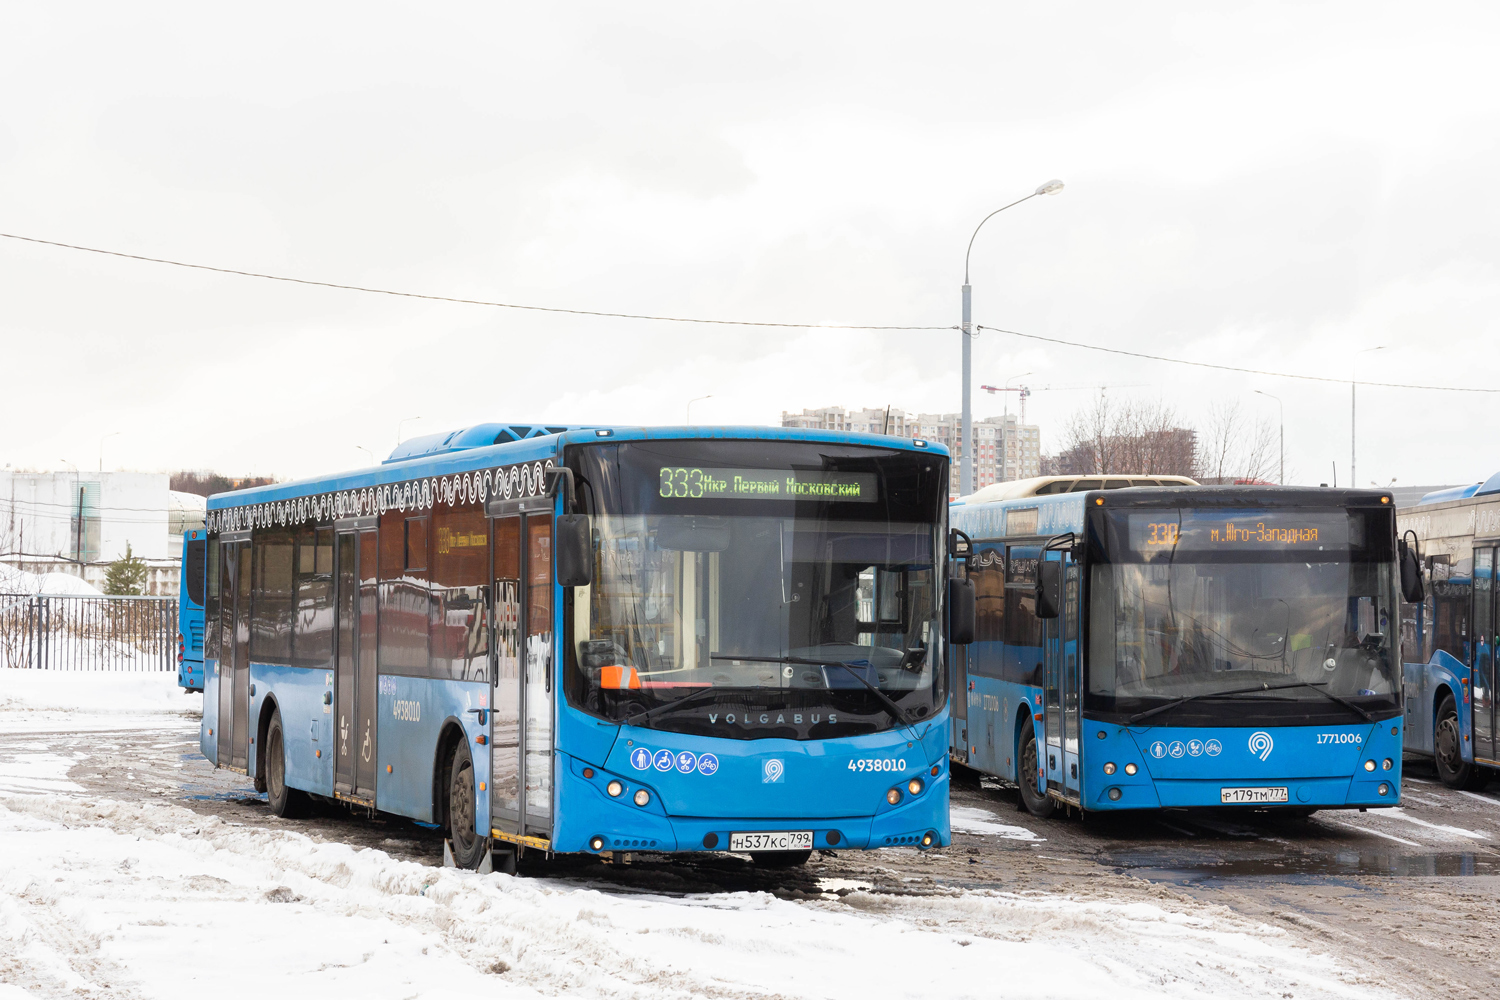 Maskva, Volgabus-5270.02 Nr. 4938010